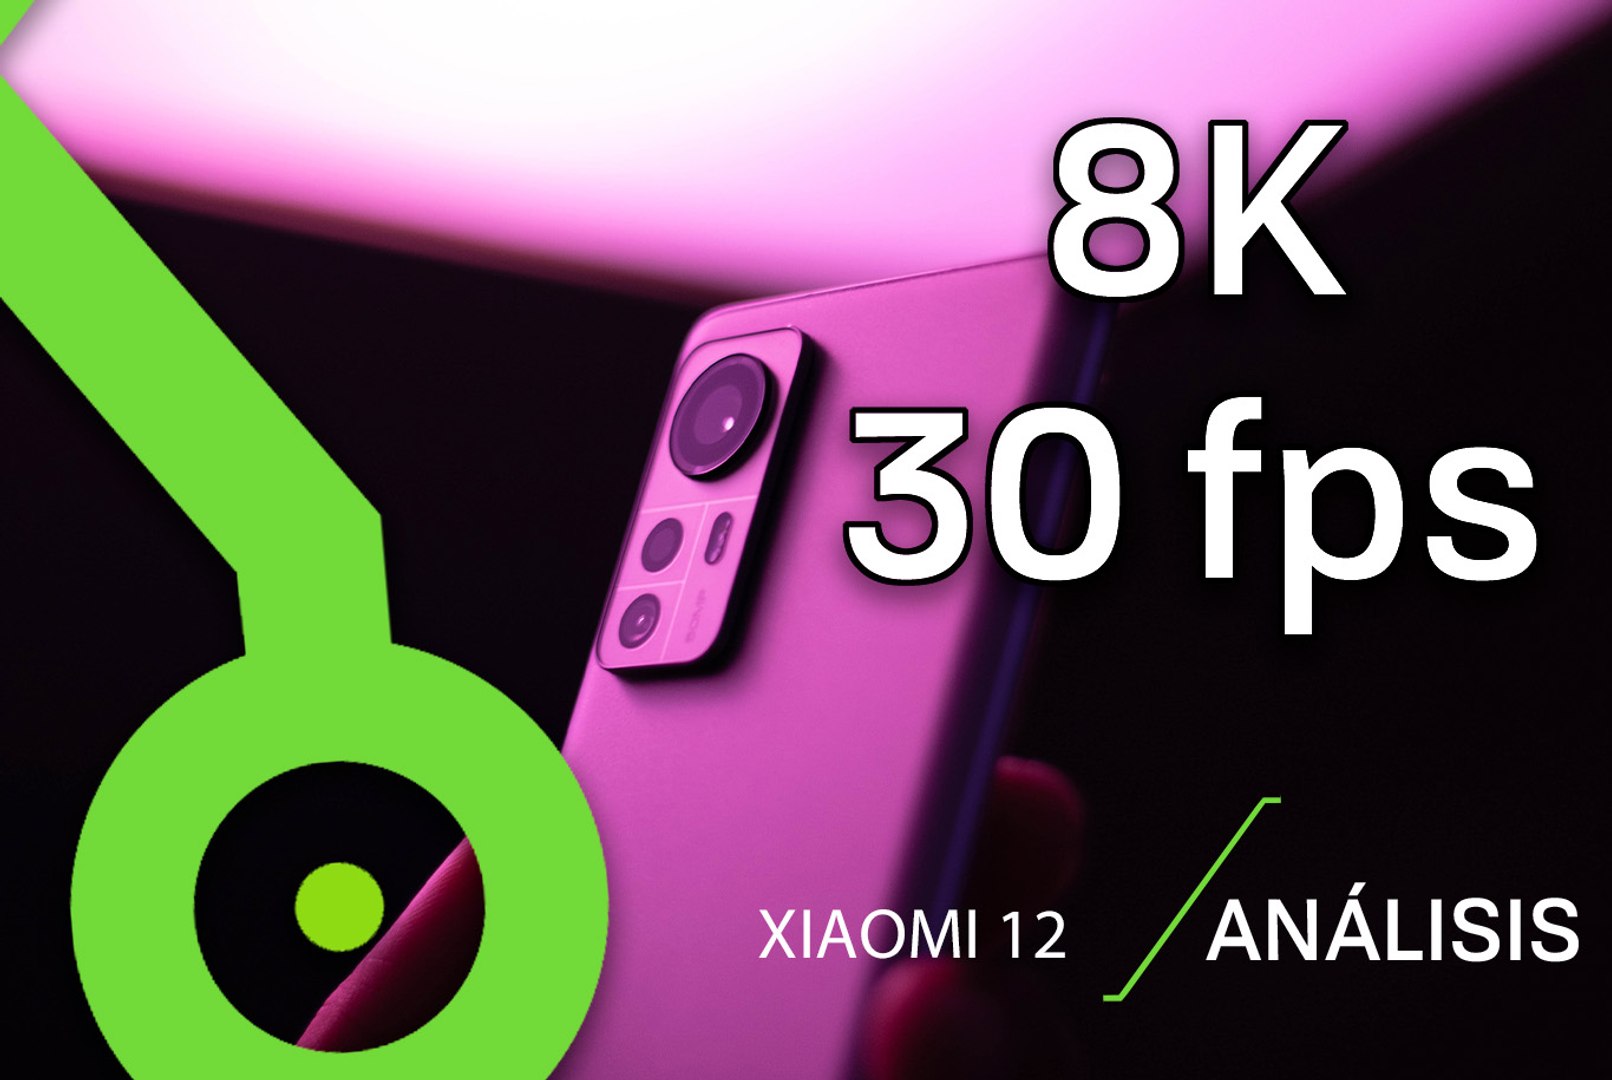 Xiaomi 12 8K 30 FPS